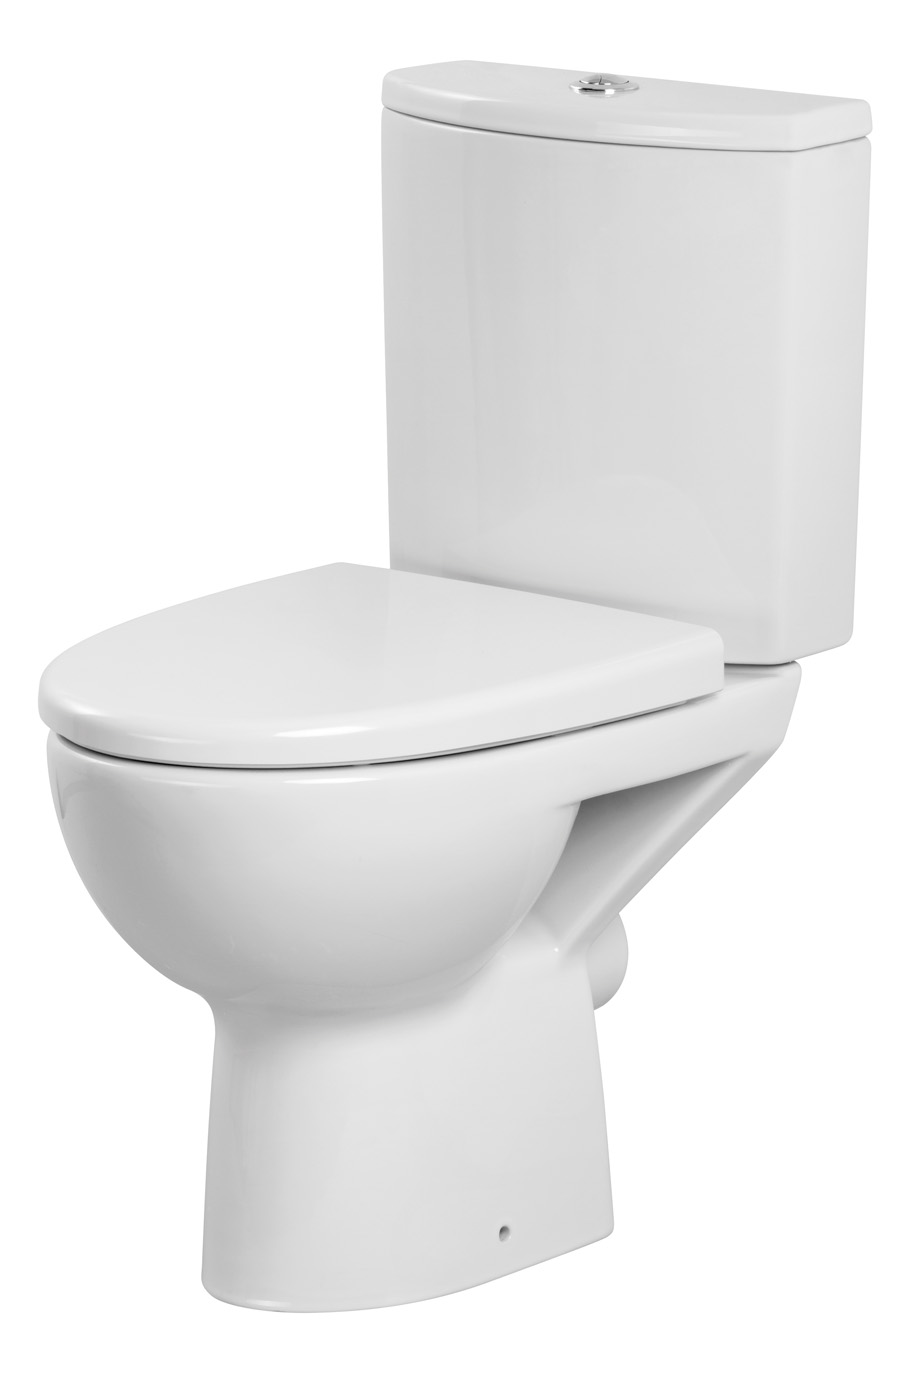 Zestaw kompaktowy WC Cersanit Parva 59.5 cm cm bialy (K27-004) K27-004 (5907720648619)